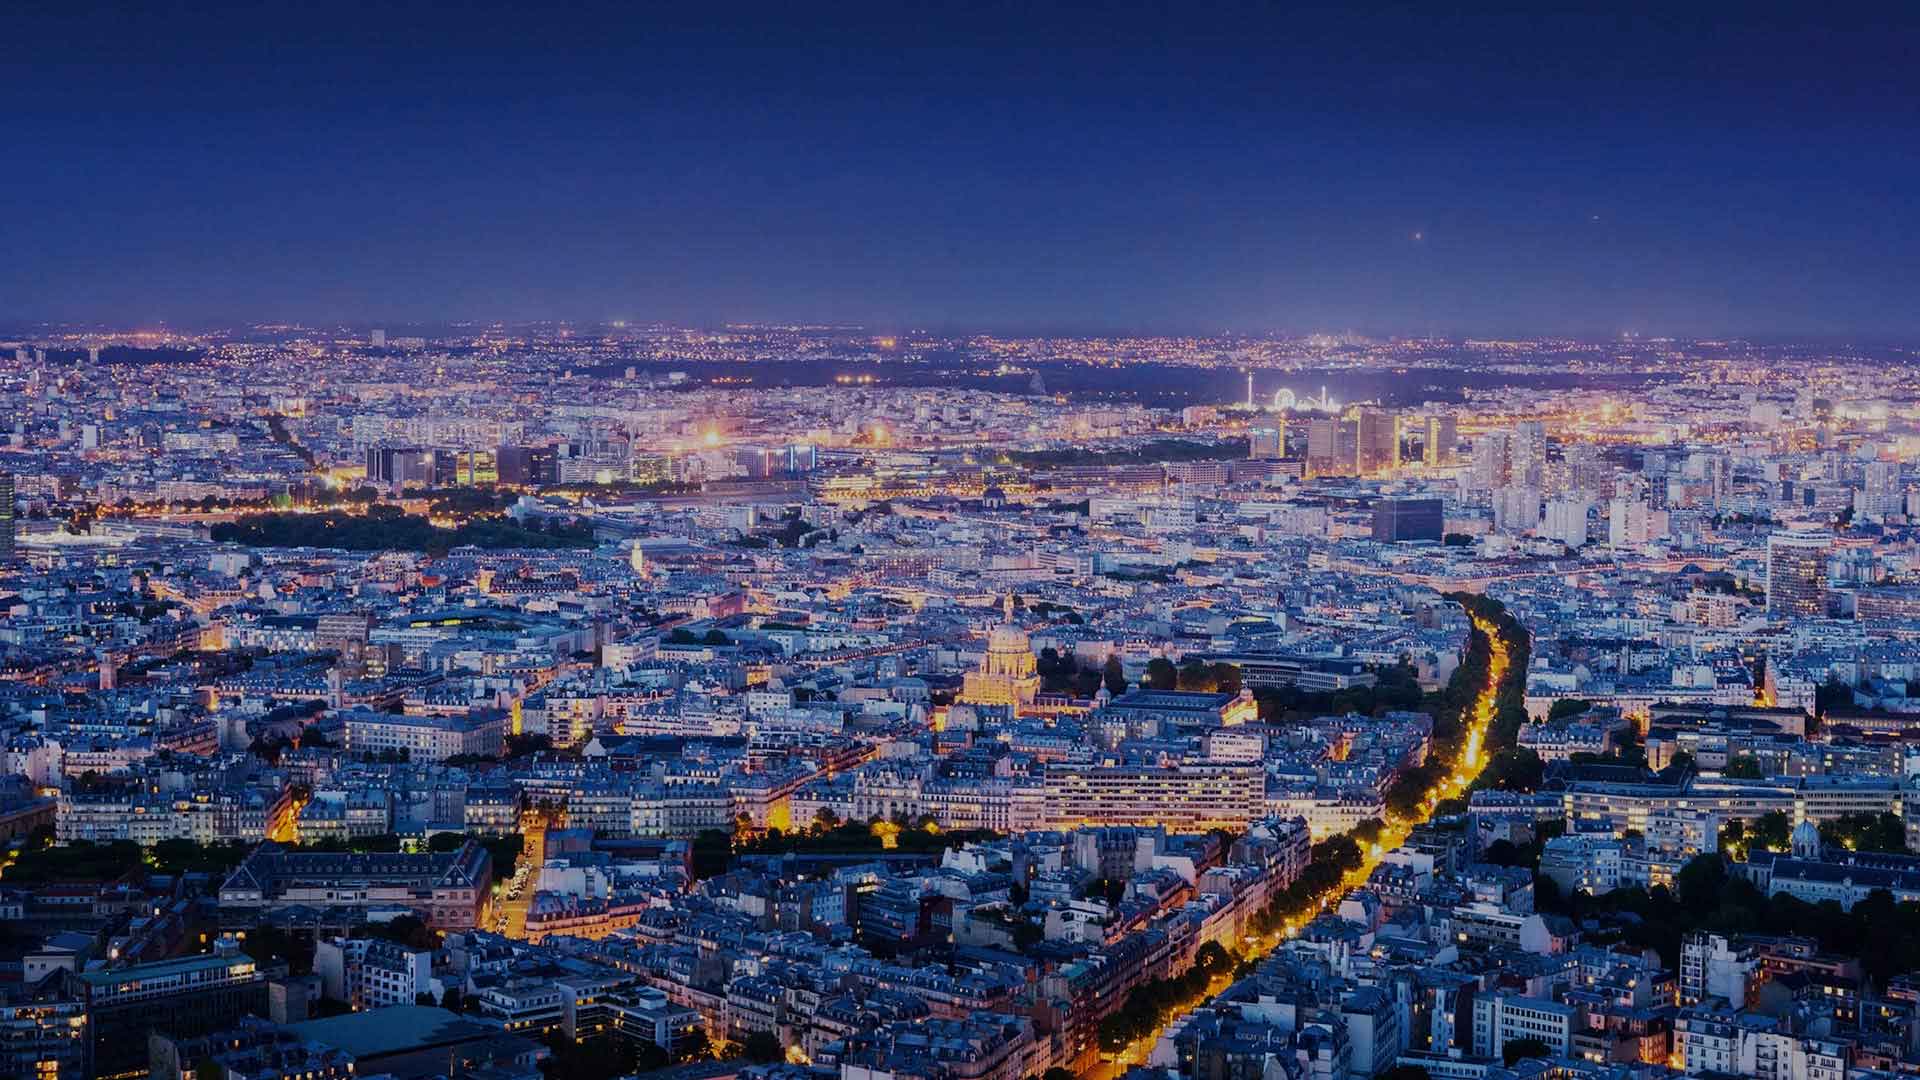 Métropole du Grand Paris' Opportunities